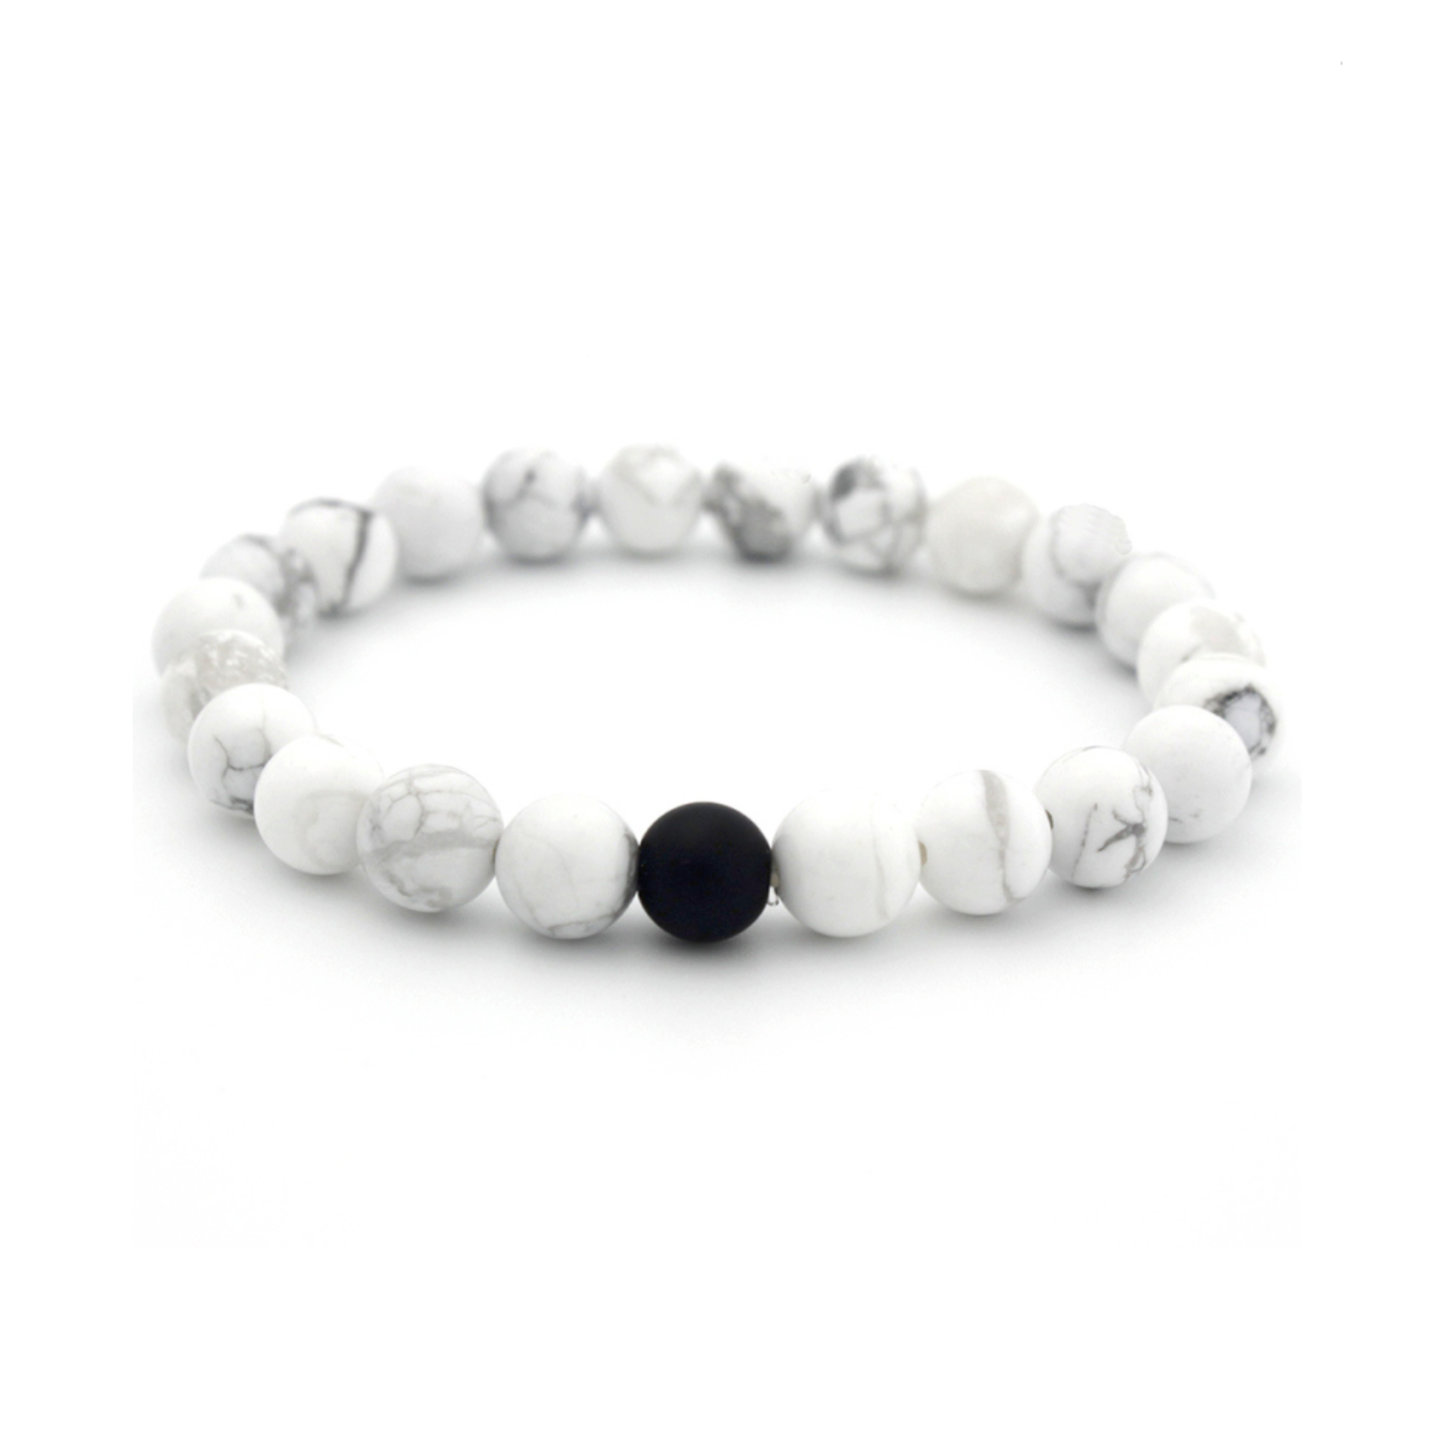 Bracelet perles blanches marbrées et perle noire.  Détails produit : Perles marbrées. Cordon extensible.